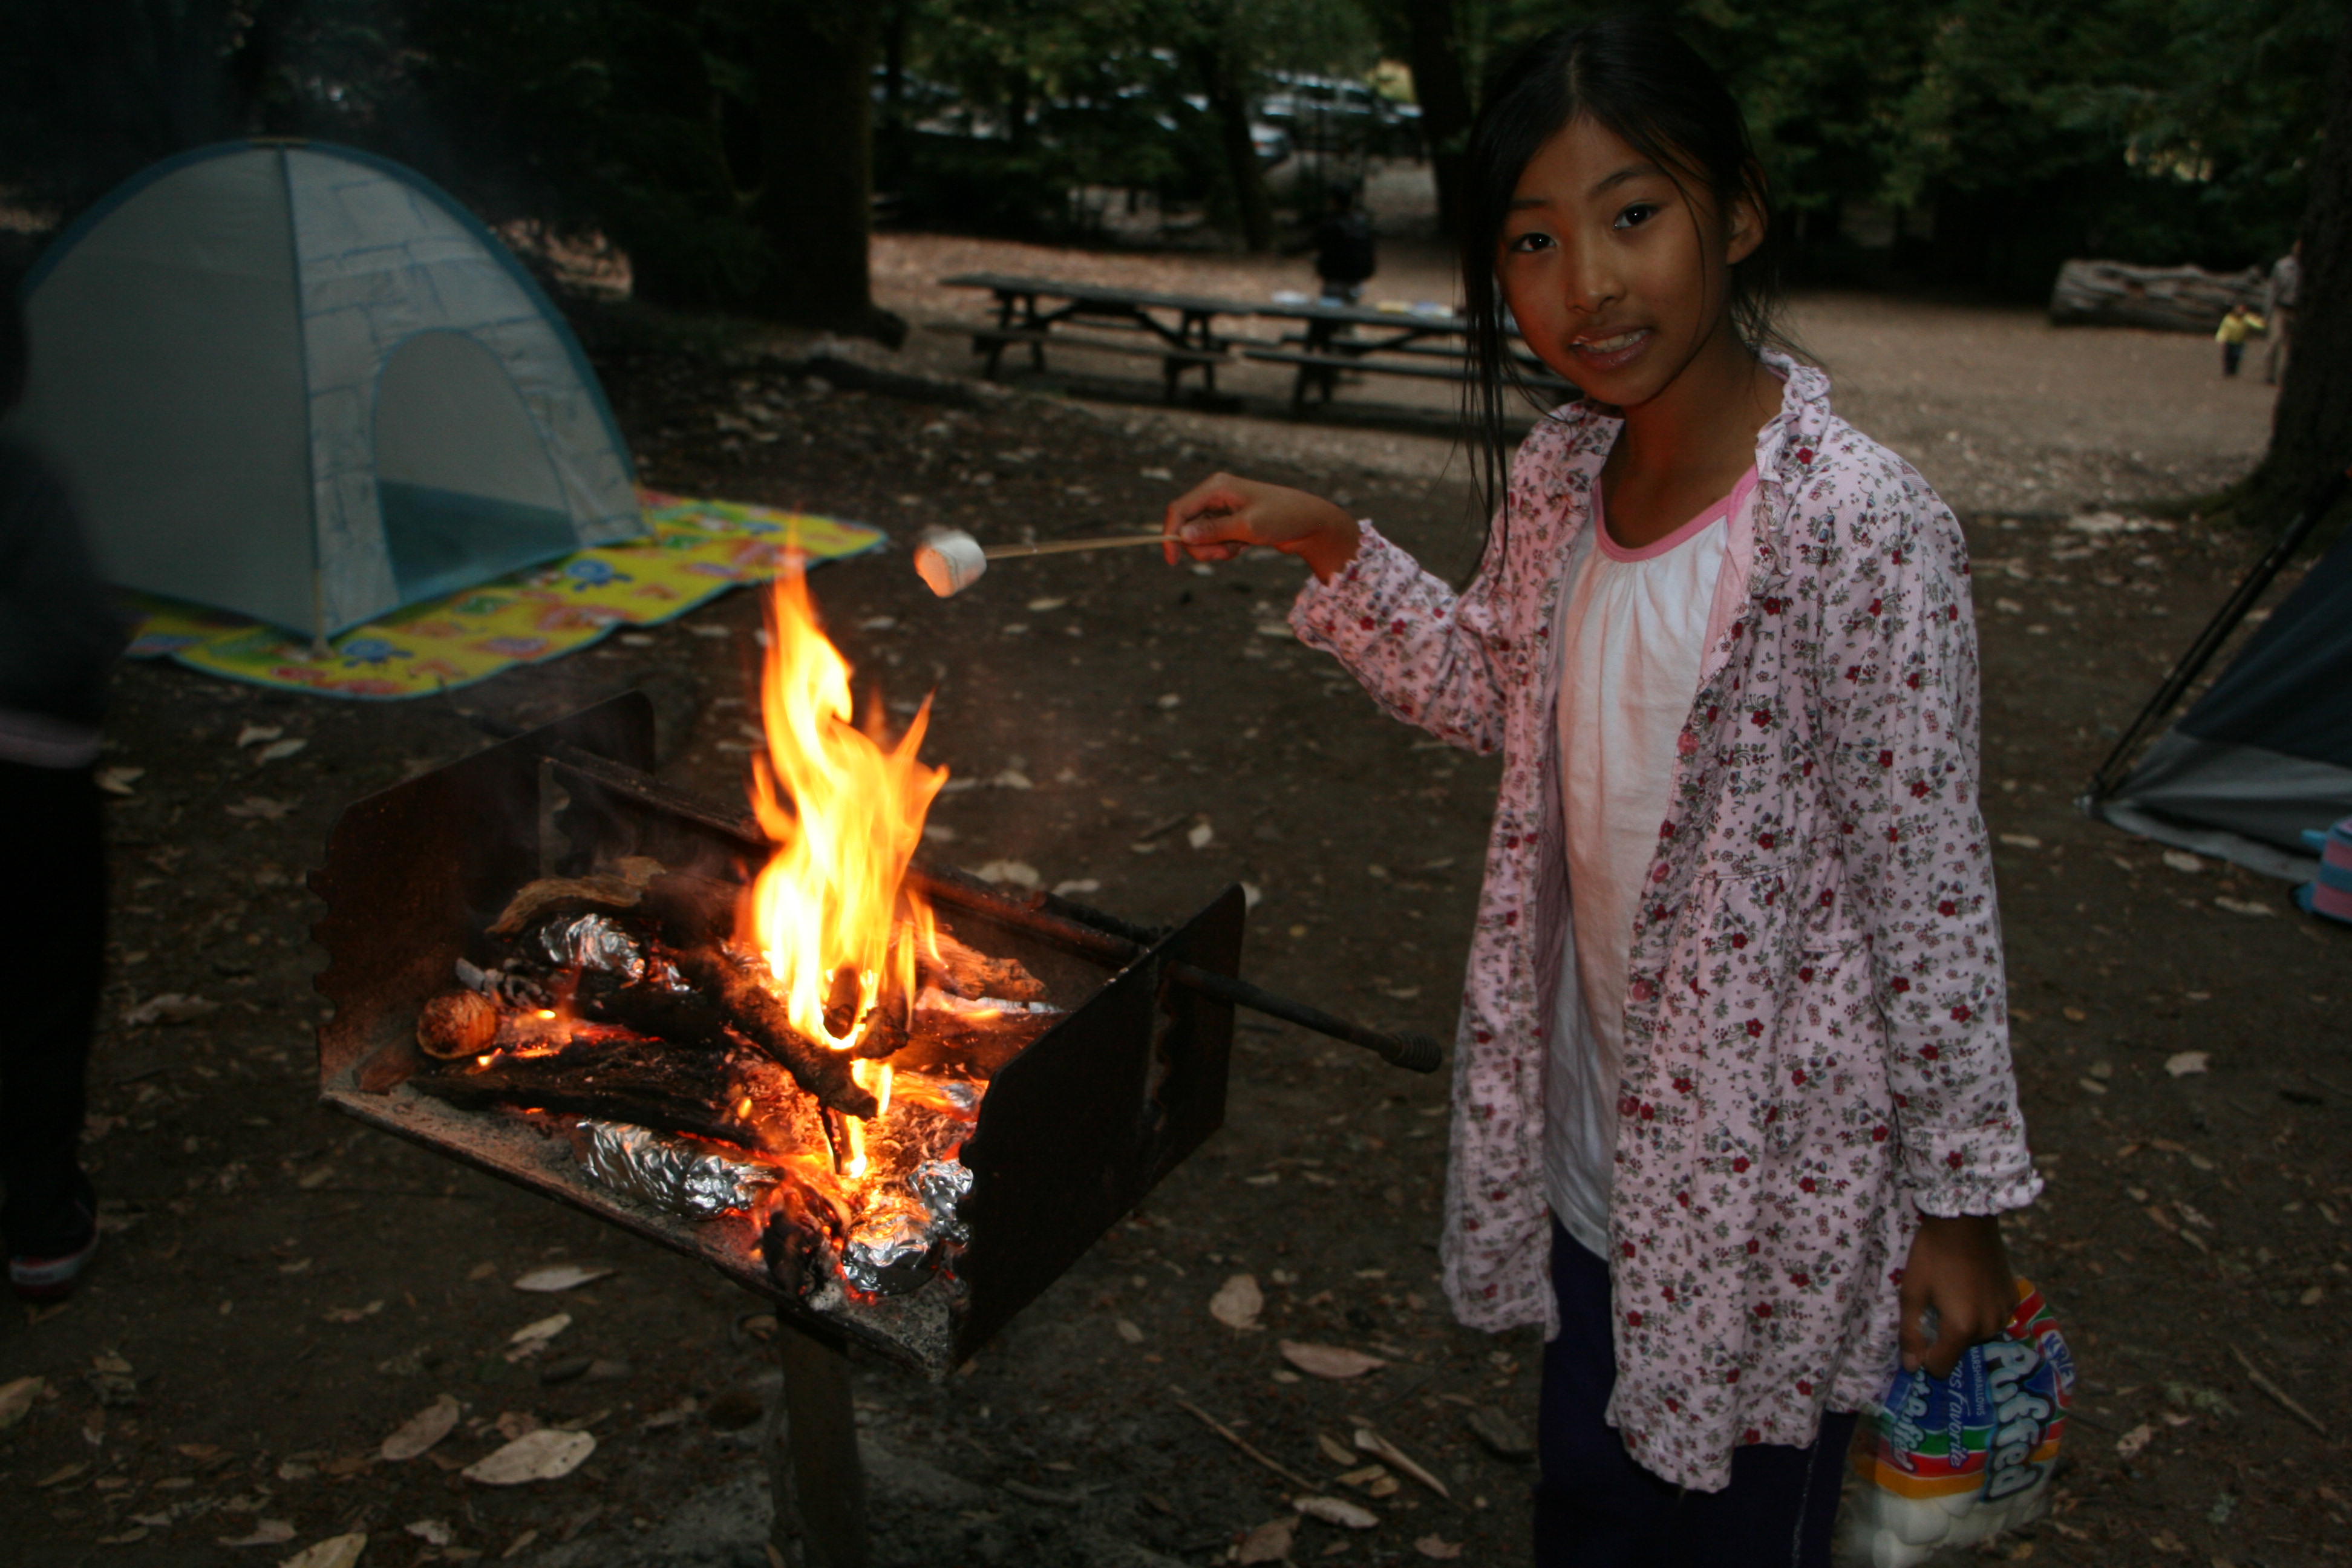 我的表妹Sunny正在烧烤架上烤棉花糖，身后是一片用来扎帐篷的空地。摄于2011年8月，十年以前。图片未经授权。